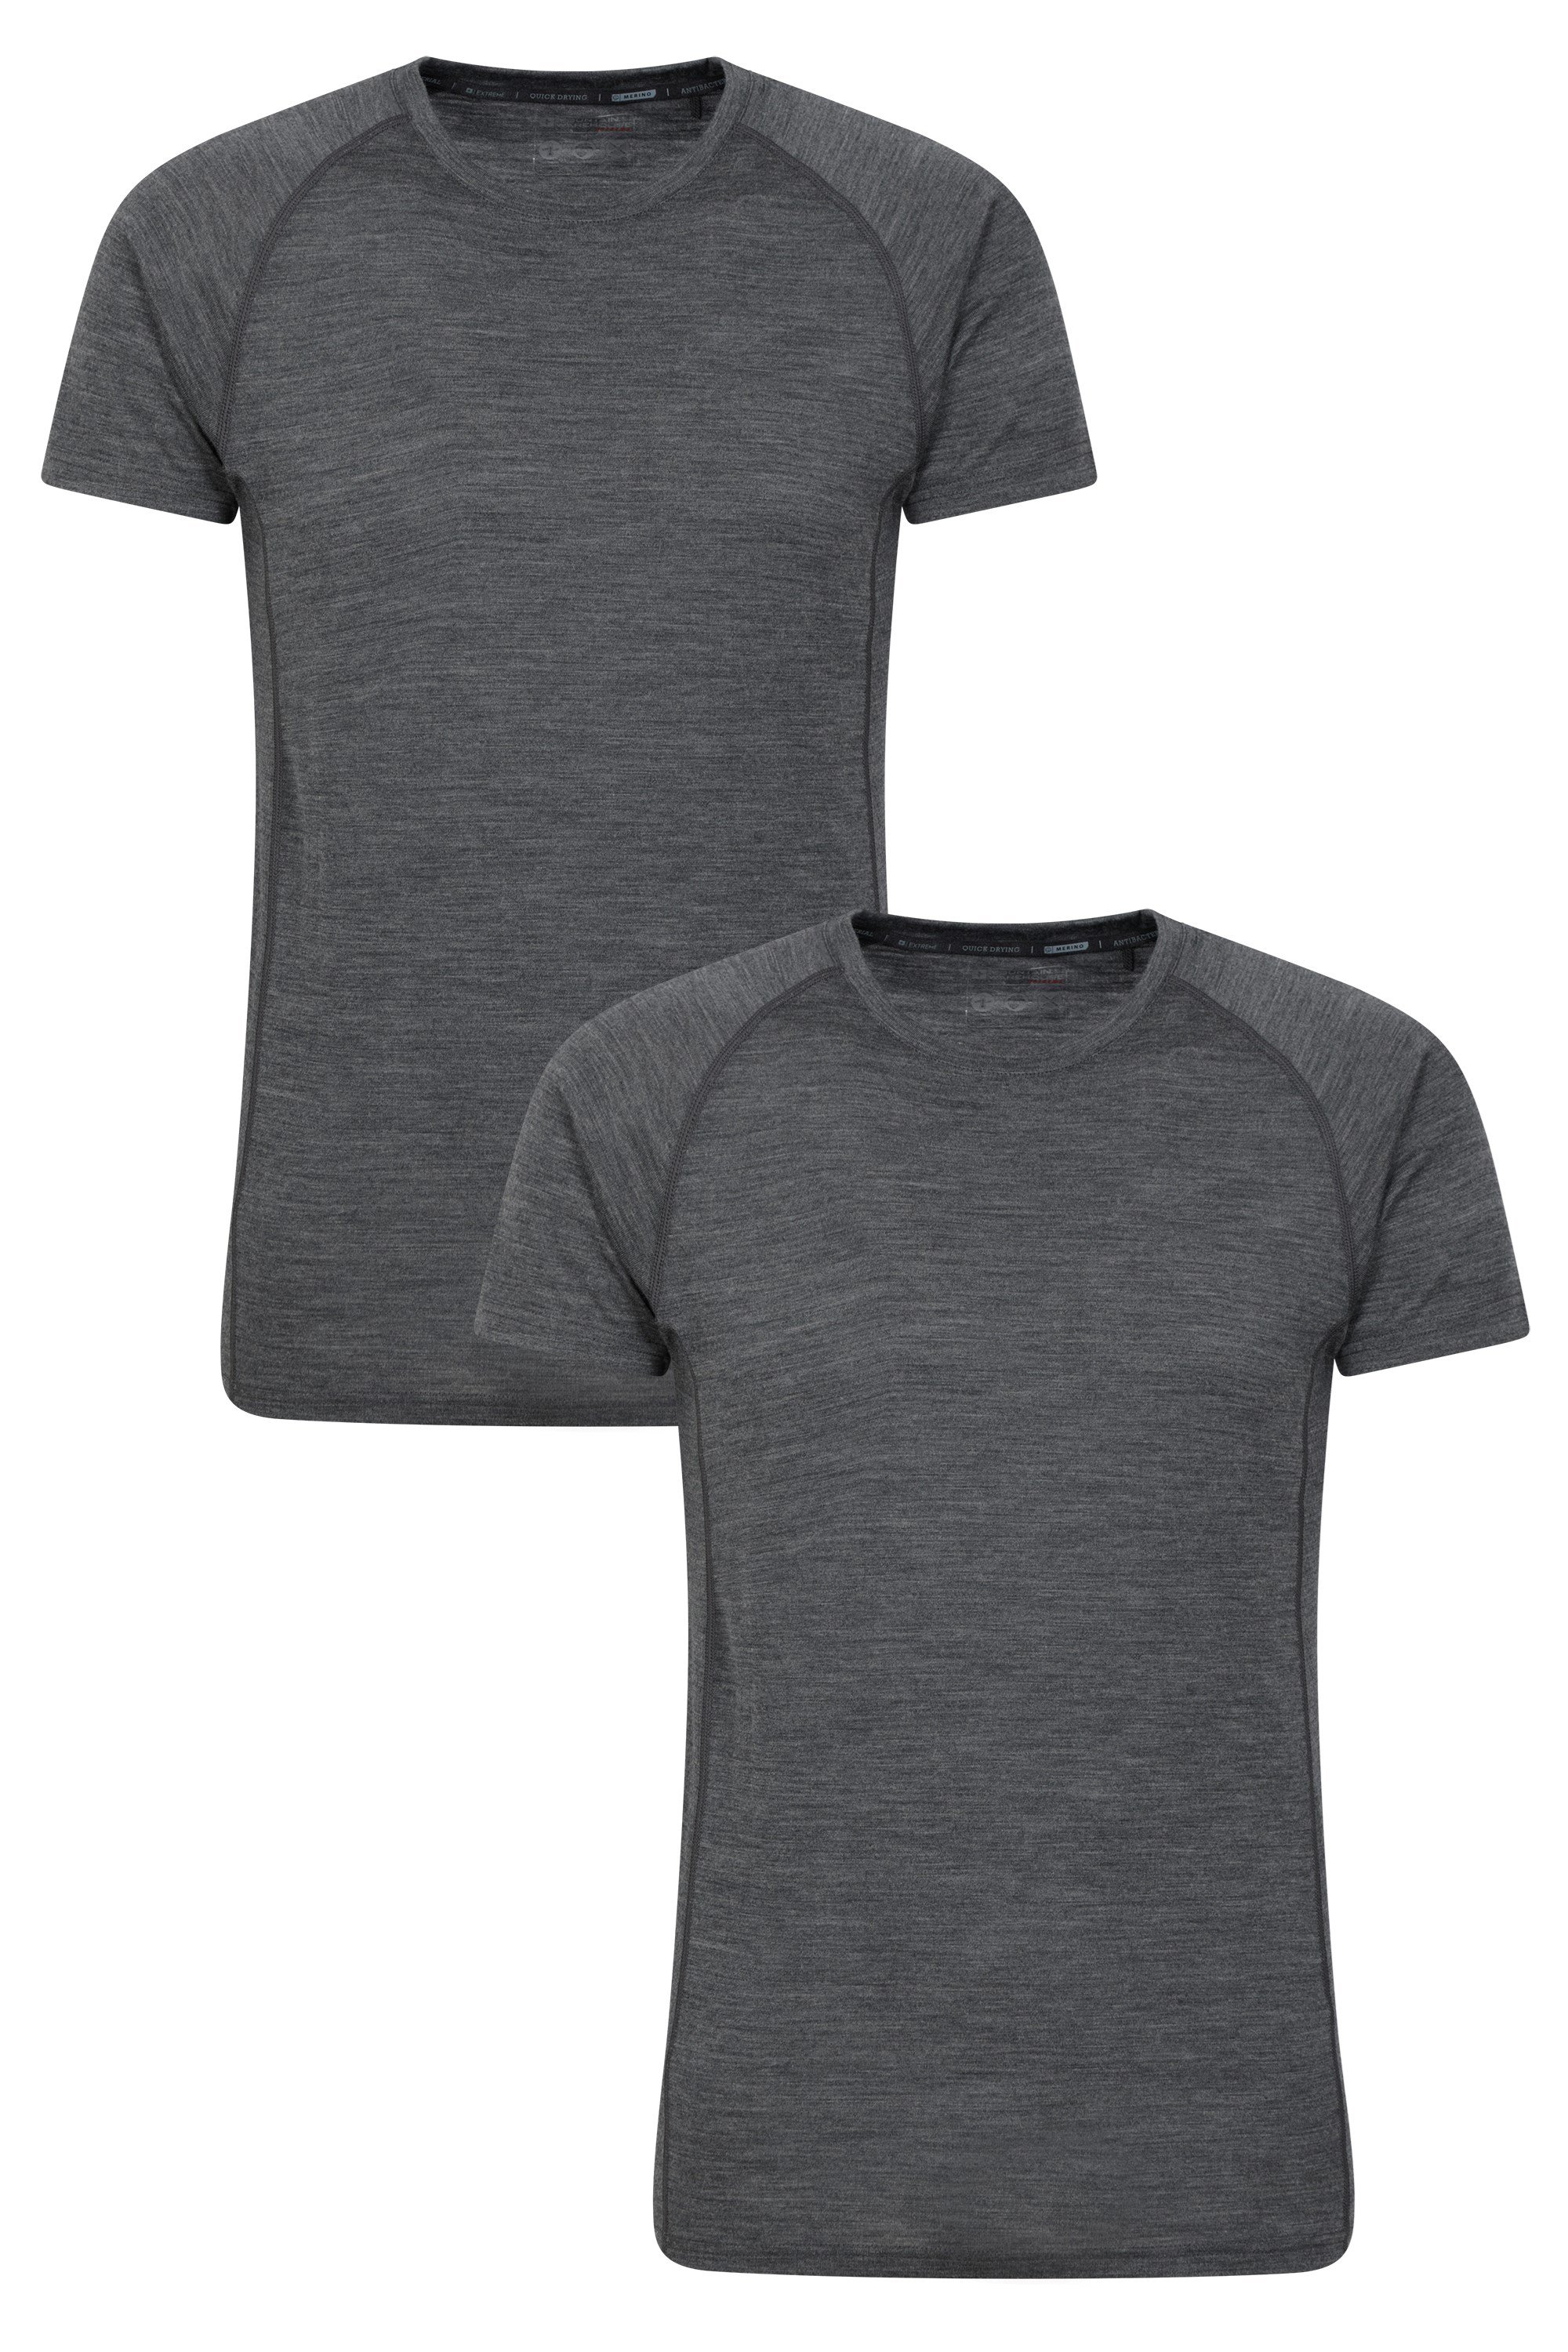 Summit Mens Merino T-Shirt 2-Pack - Grey